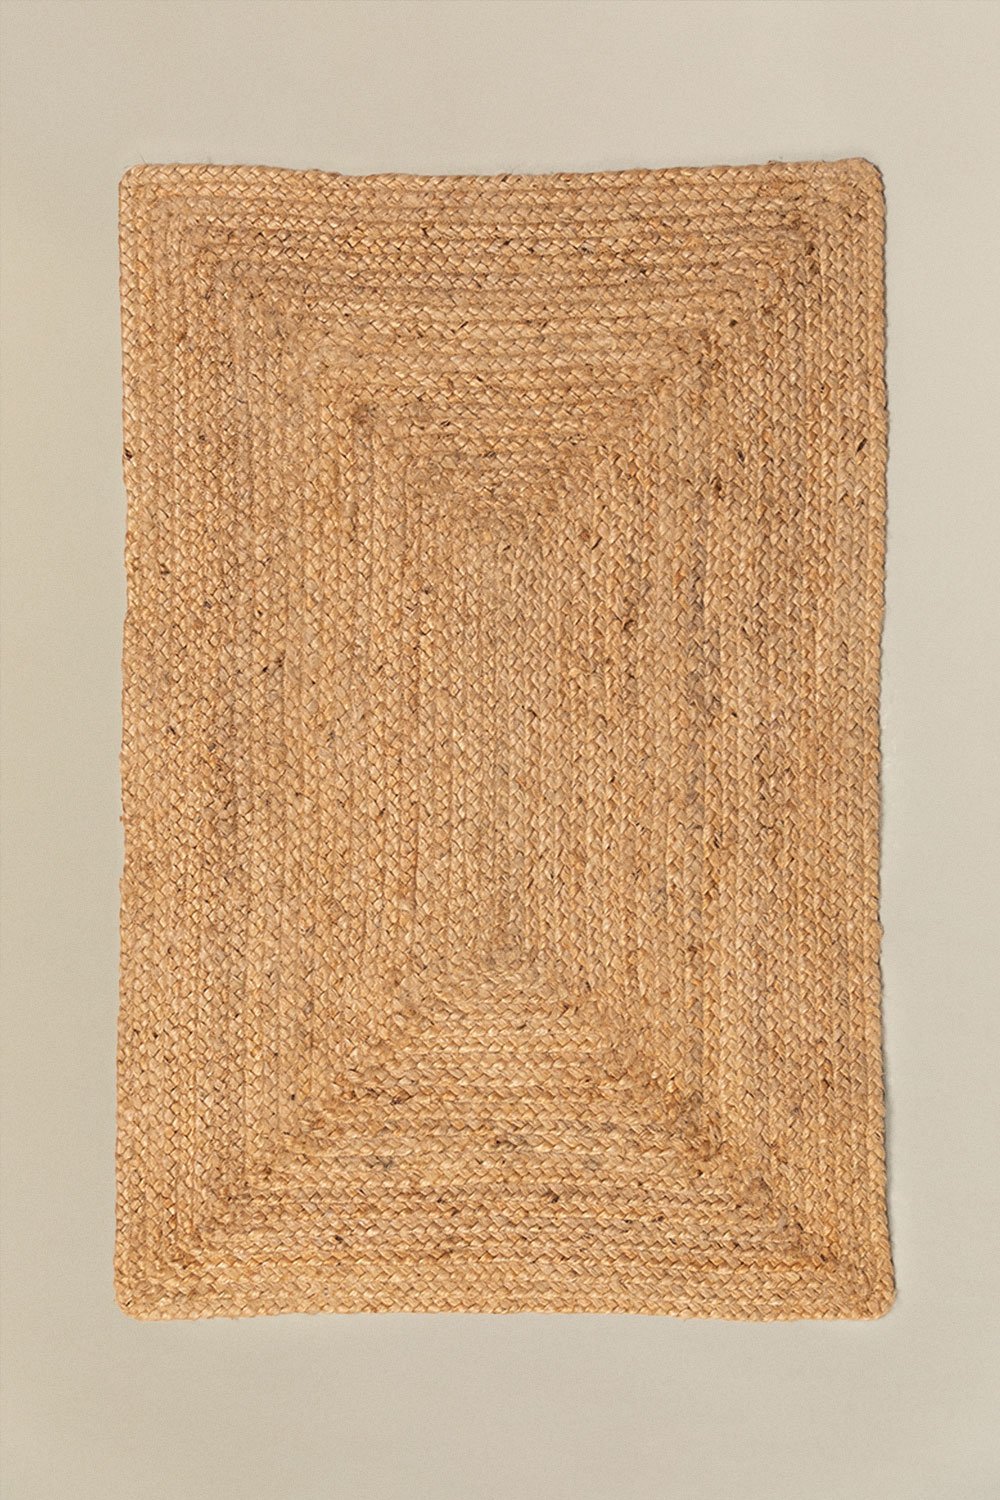 Tapete Trançado em Juta Natural (90x60 cm) Airo , imagem de galeria 1